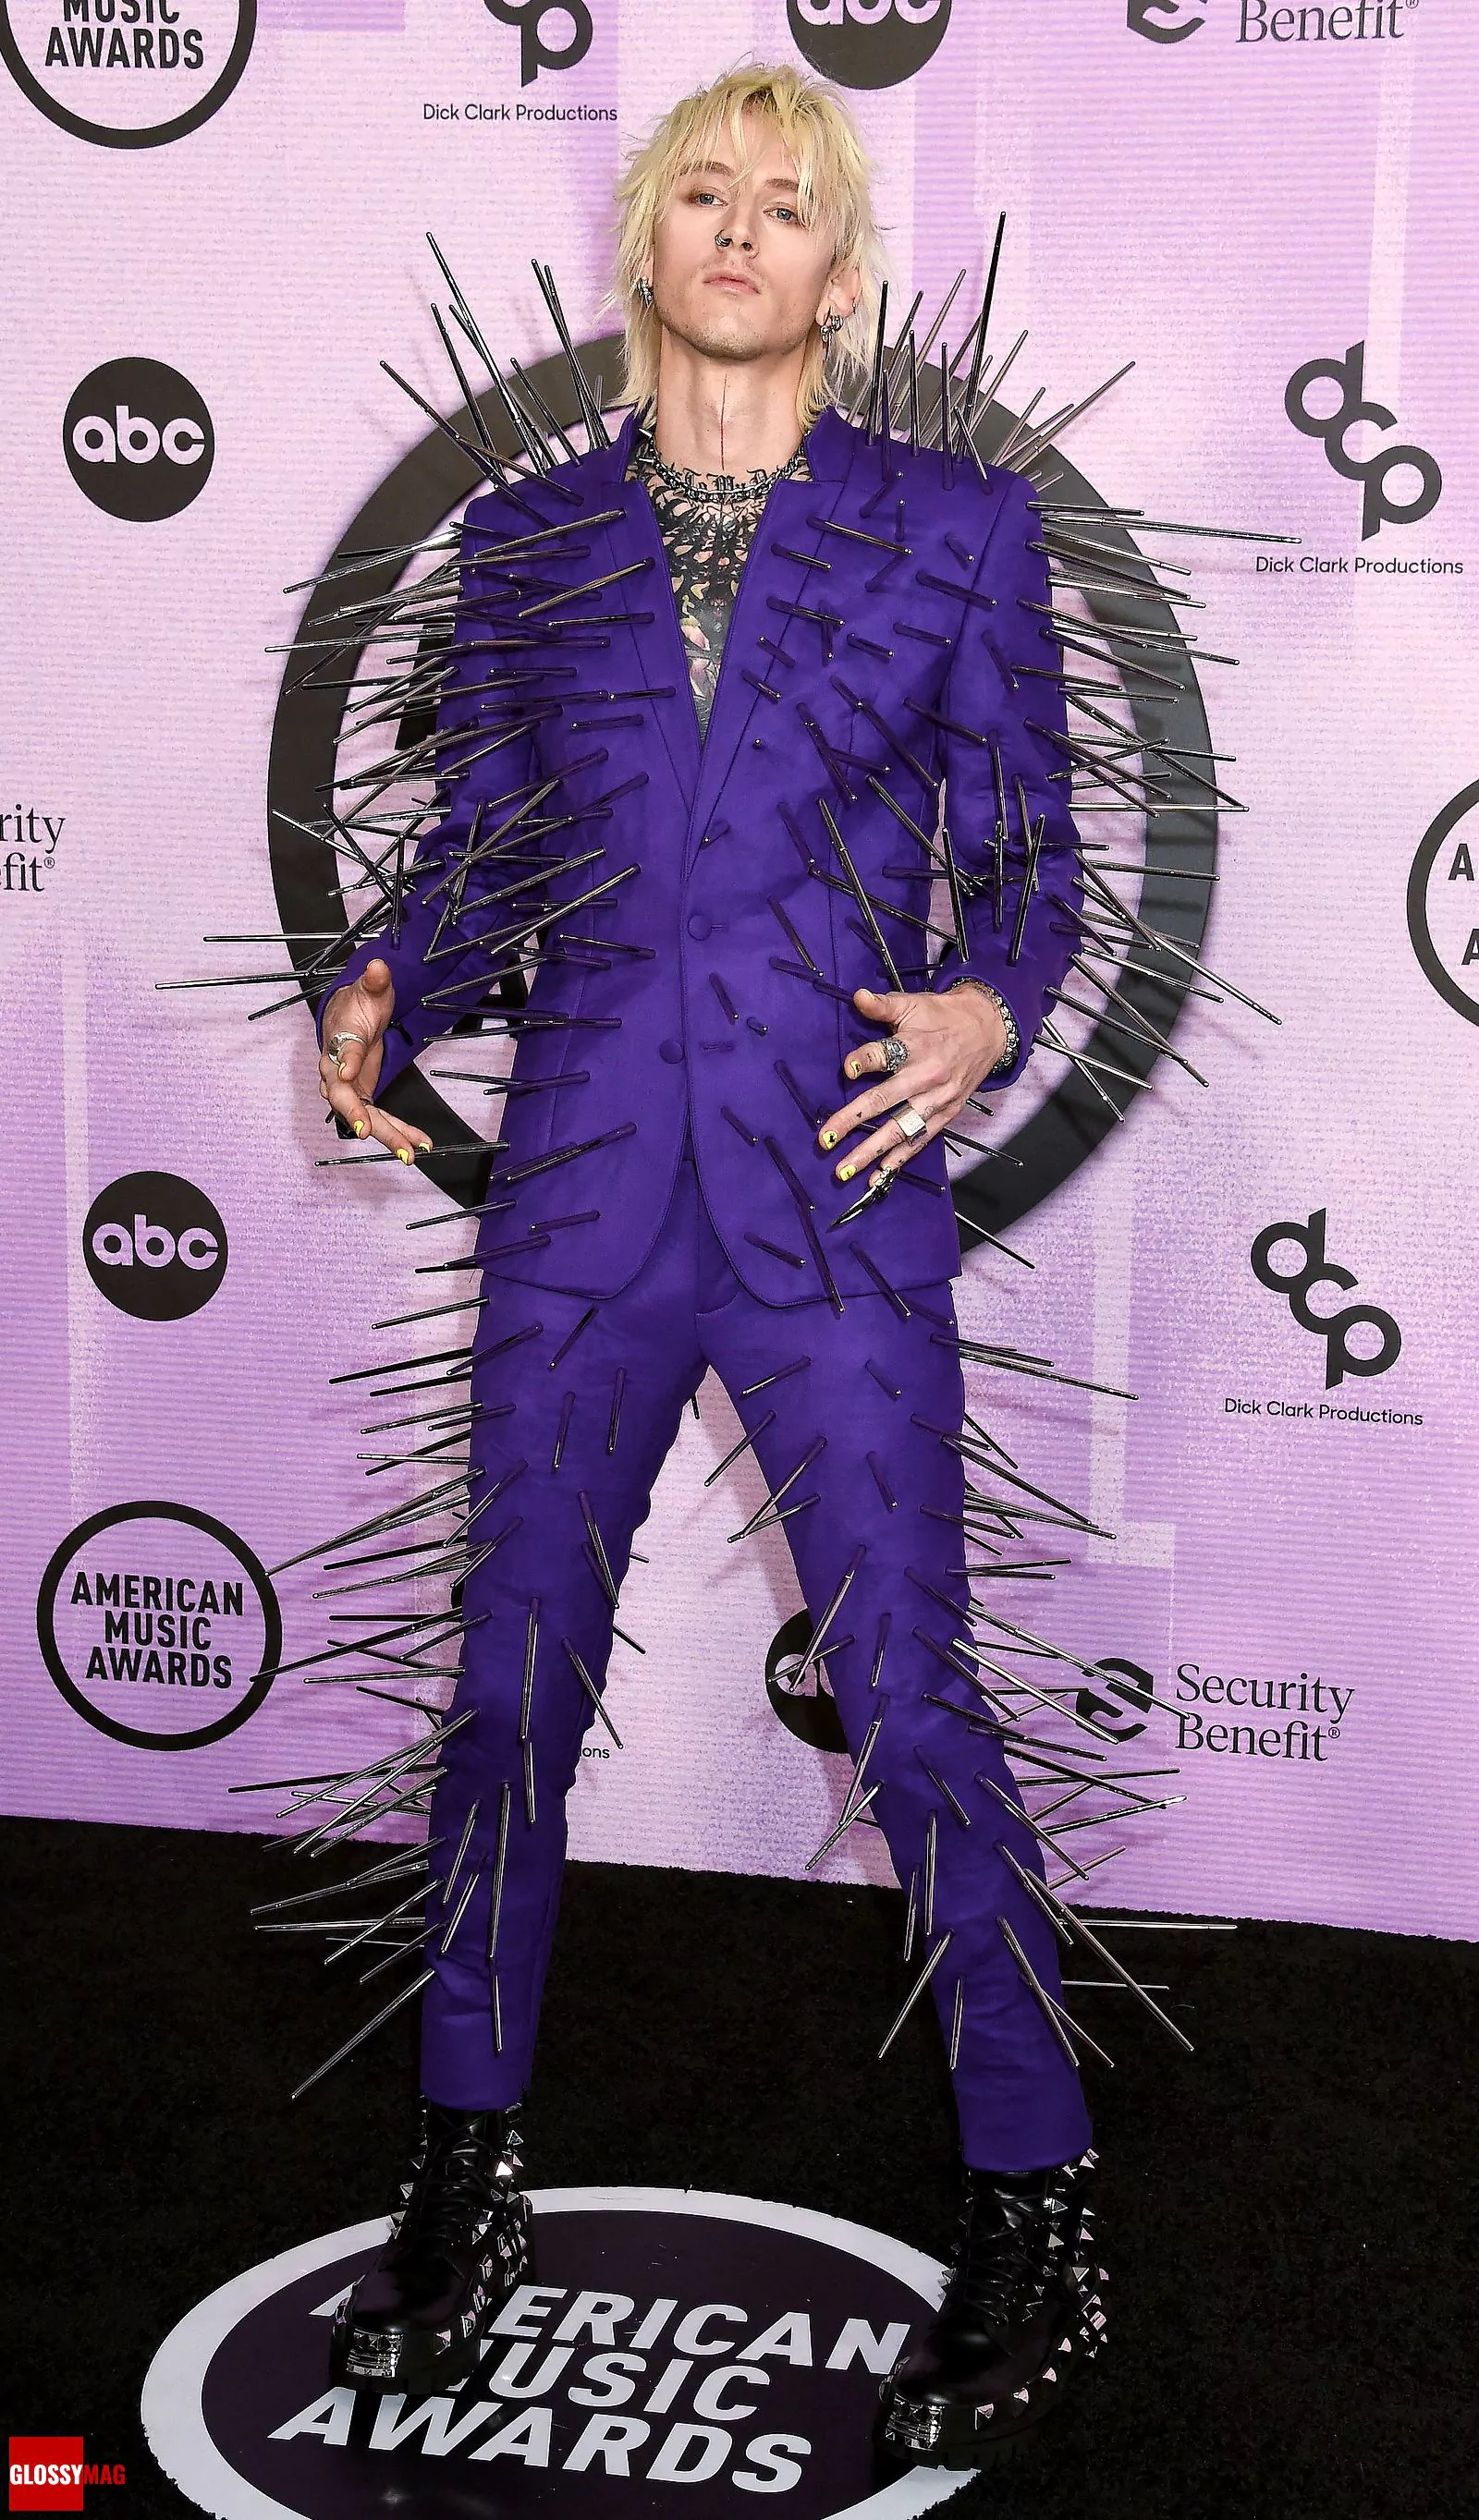 Машин Ган Келли на церемонии вручения премии American Music Awards 2022 в Лос-Анджелесе, 20 ноября 2022 г.